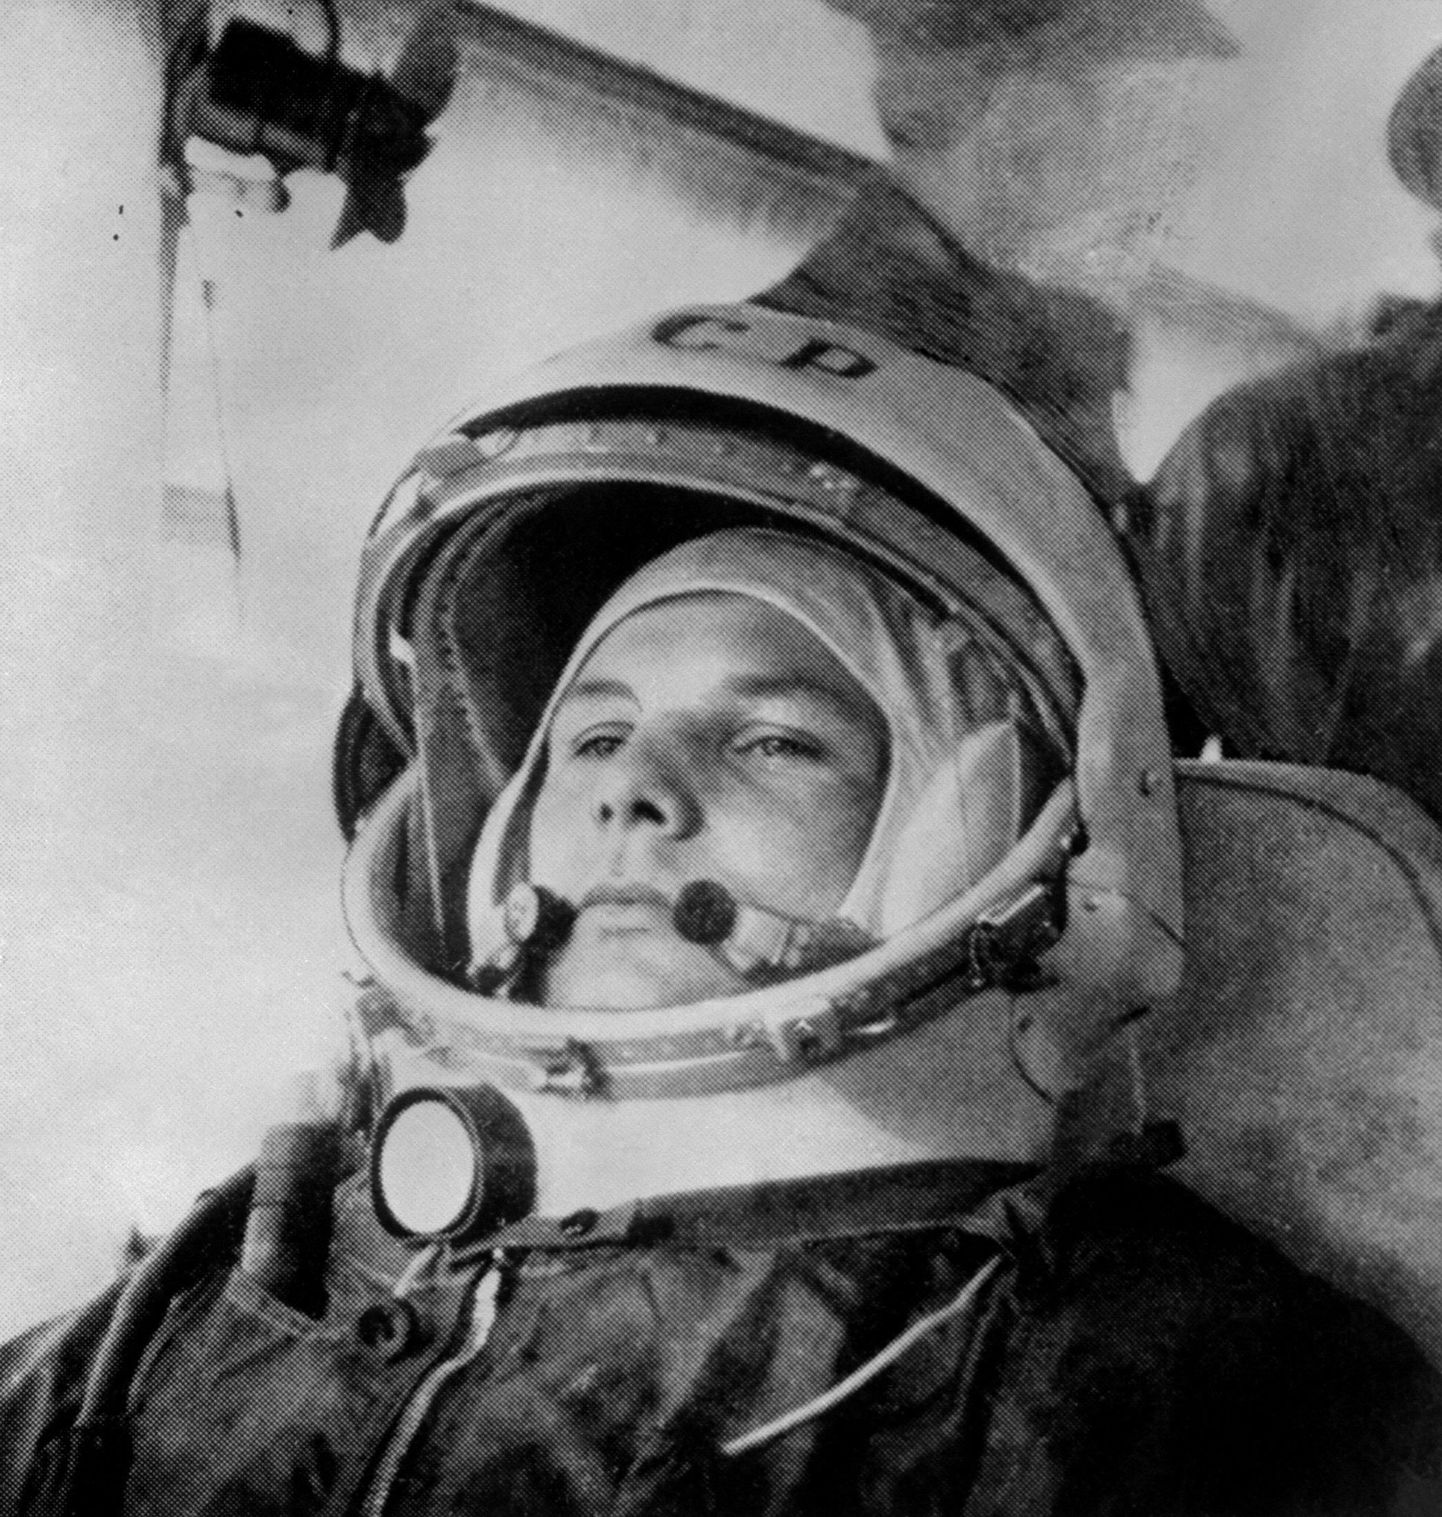 Юрий Гагарин перед полетом в космос 12 апреля 1961 года.